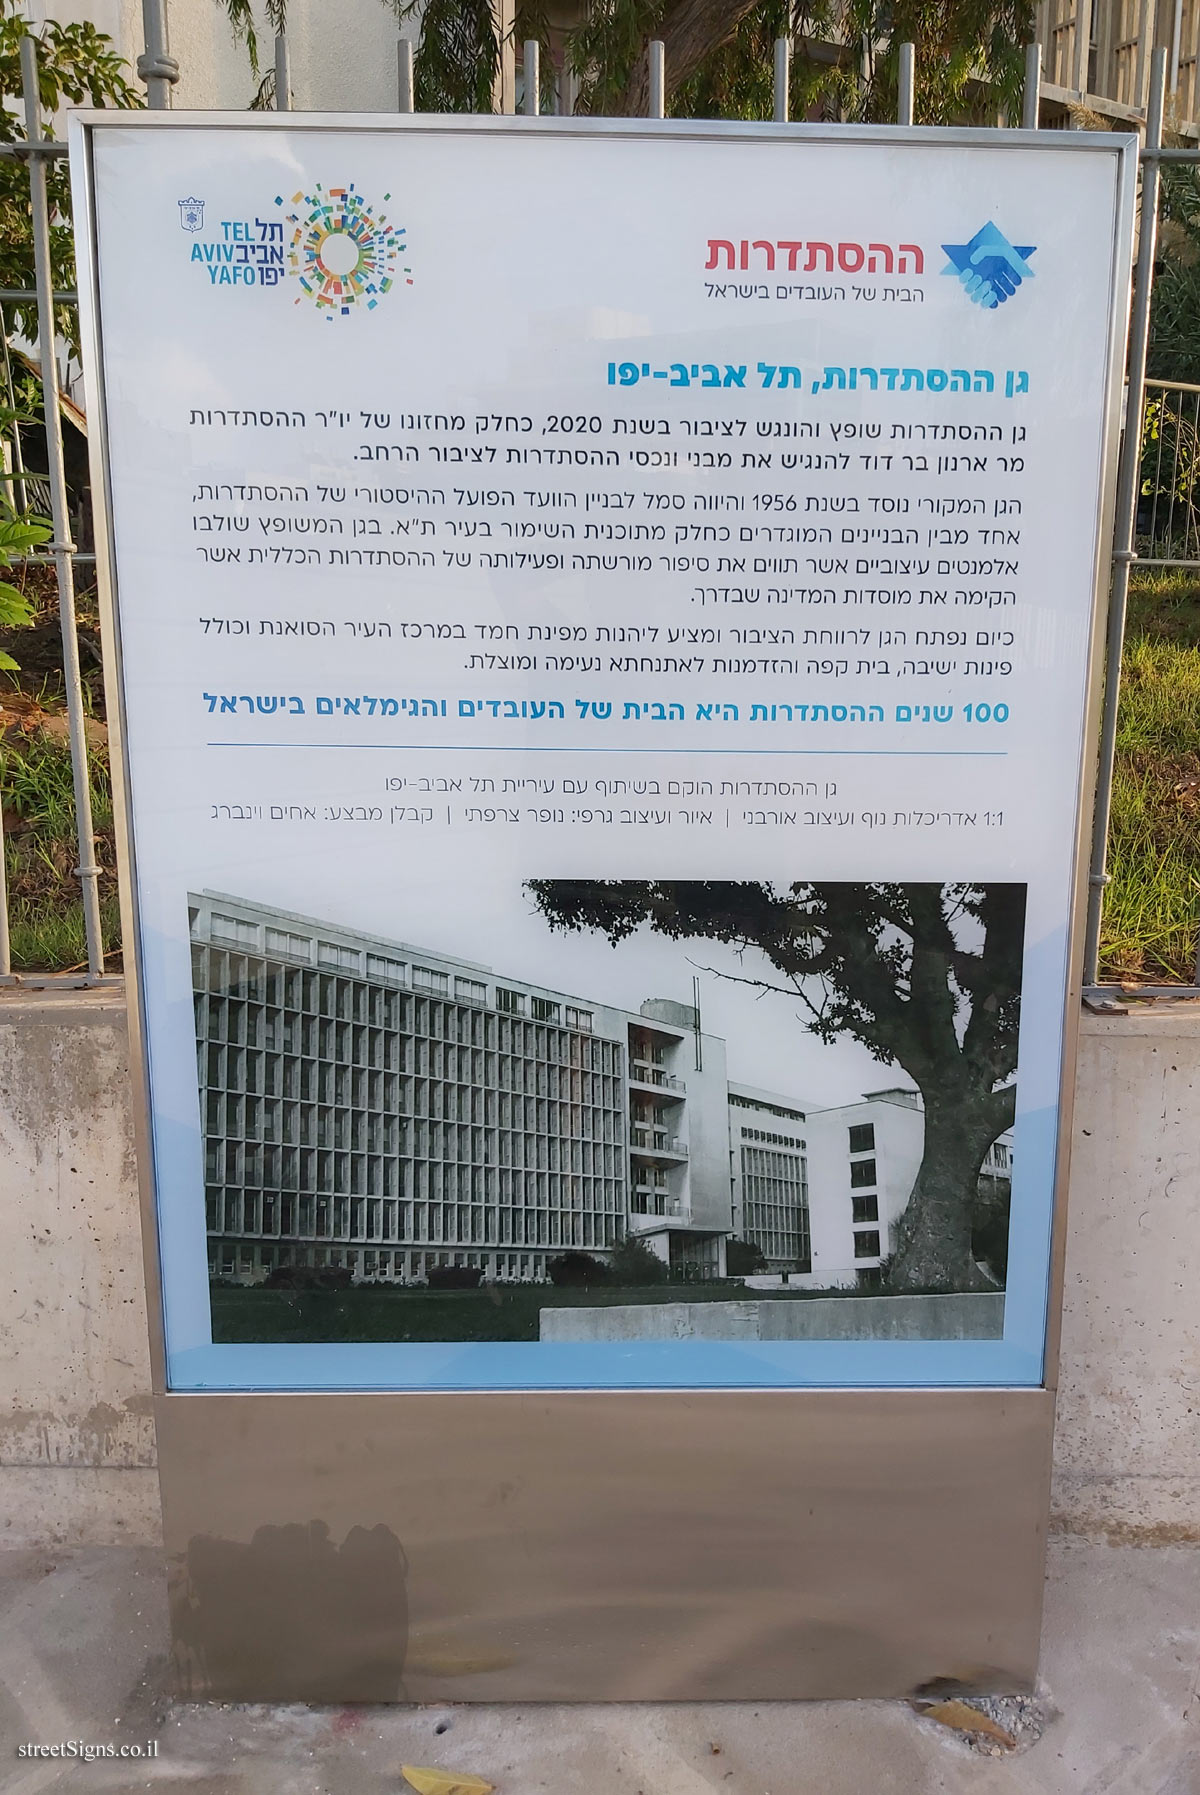 Tel Aviv - Histadrut Garden - Arlozorov St 93, Tel Aviv-Yafo, Israel